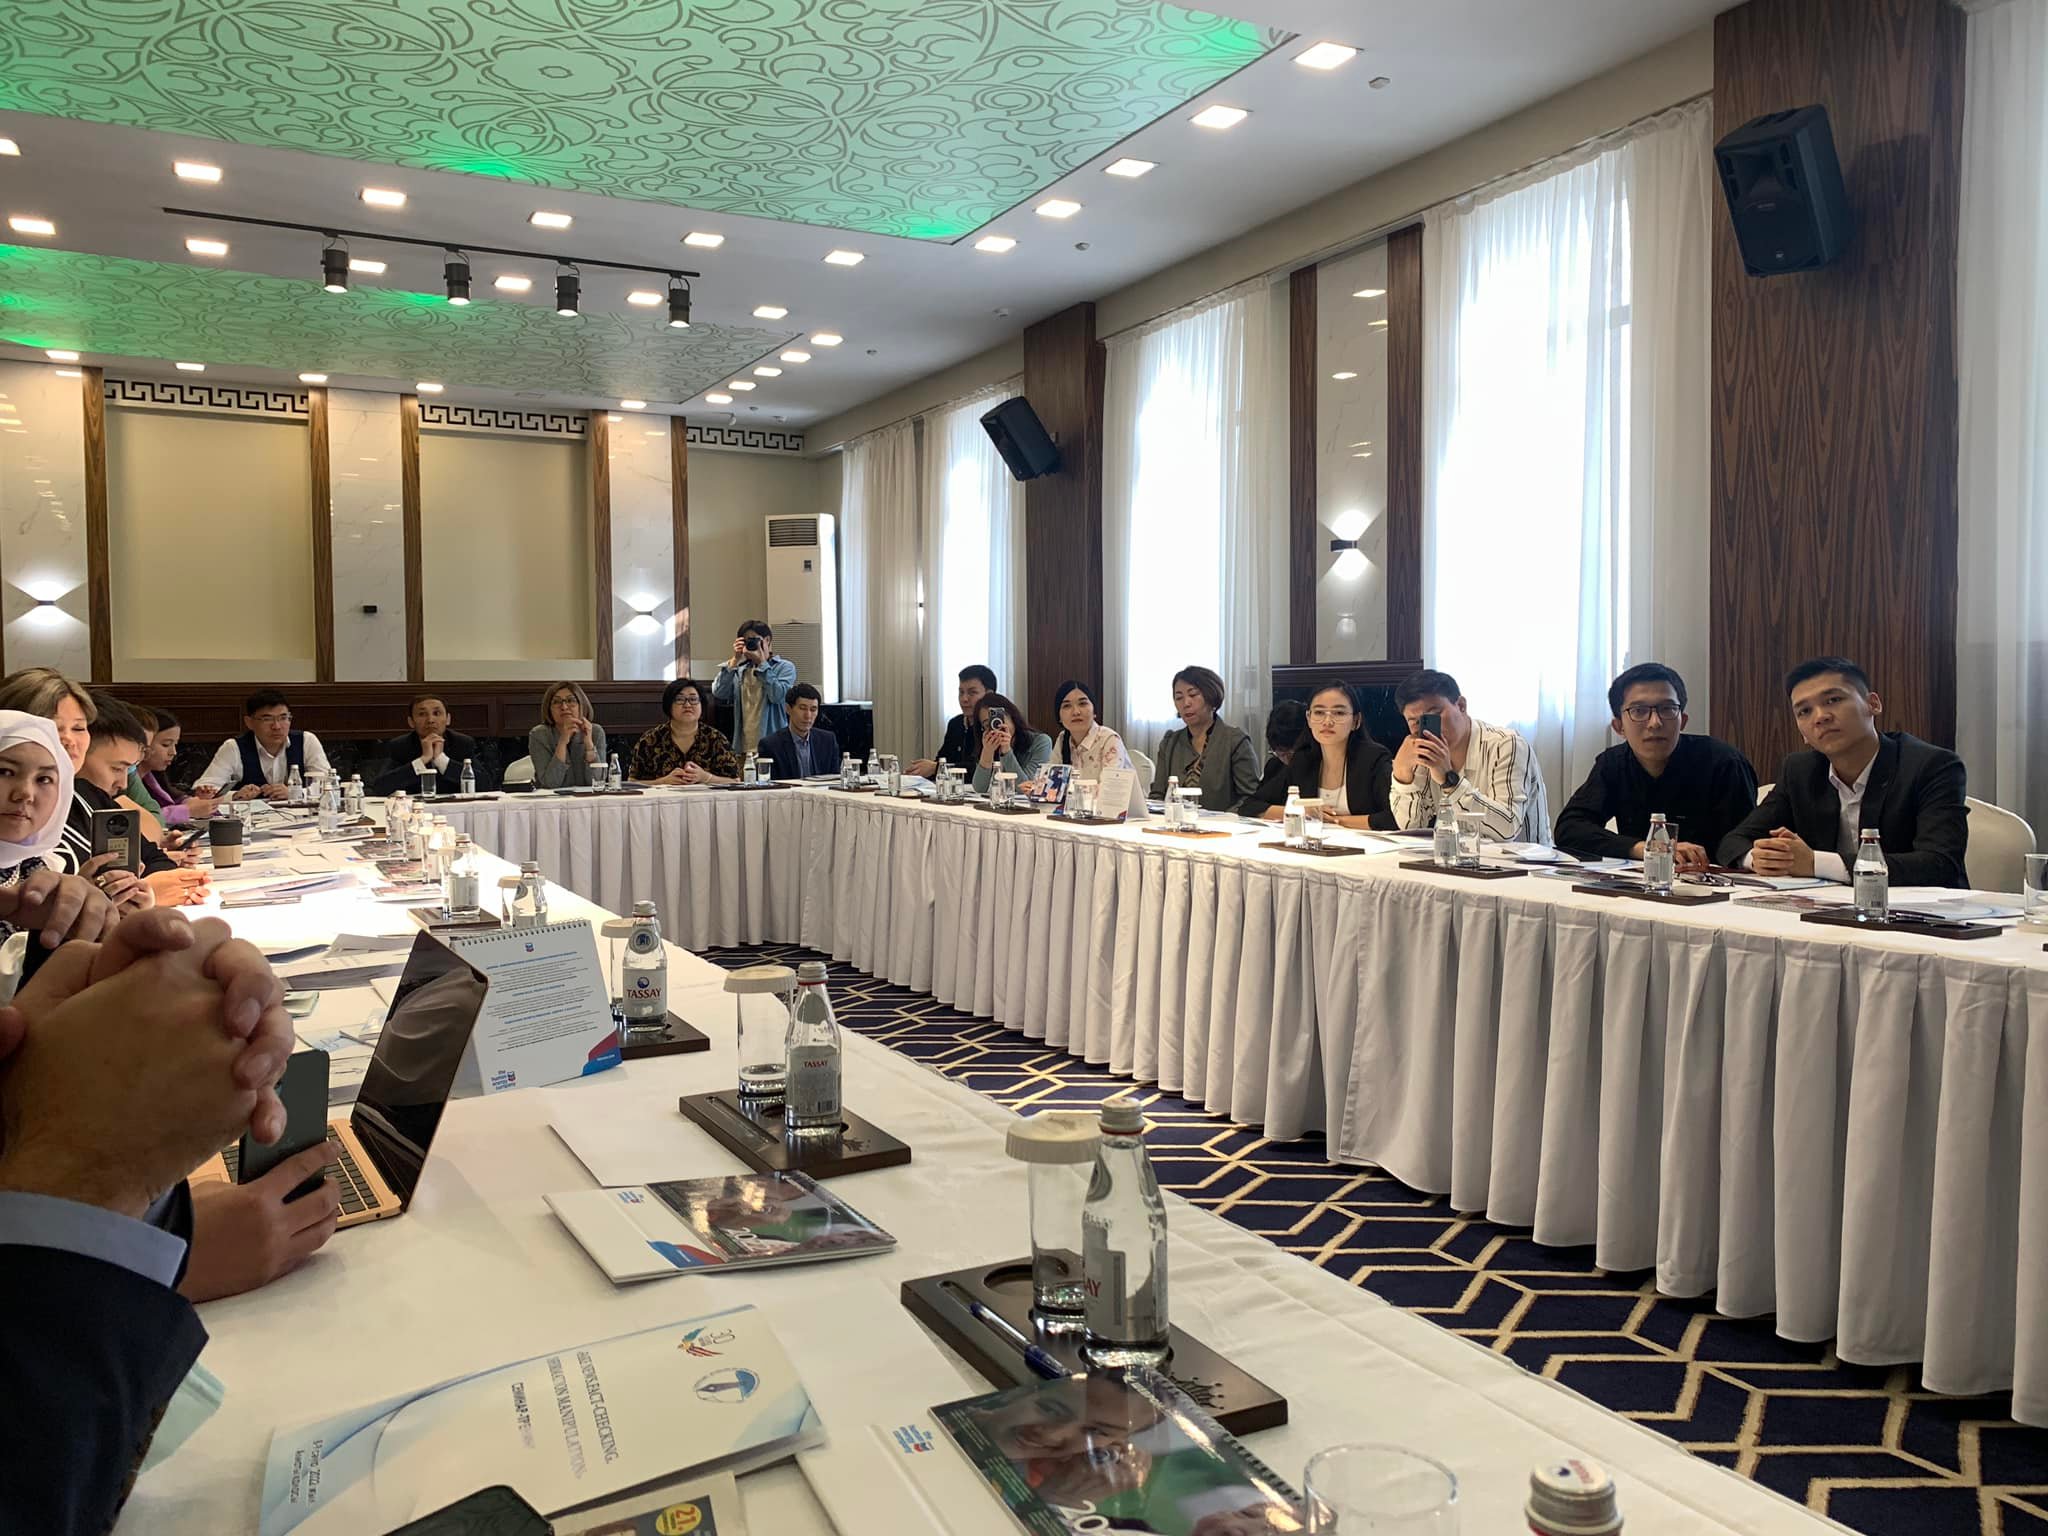 Kazakistan Türk Dili Konuşan Gazeteciler Vakfı Medya Semineri başladı 6 